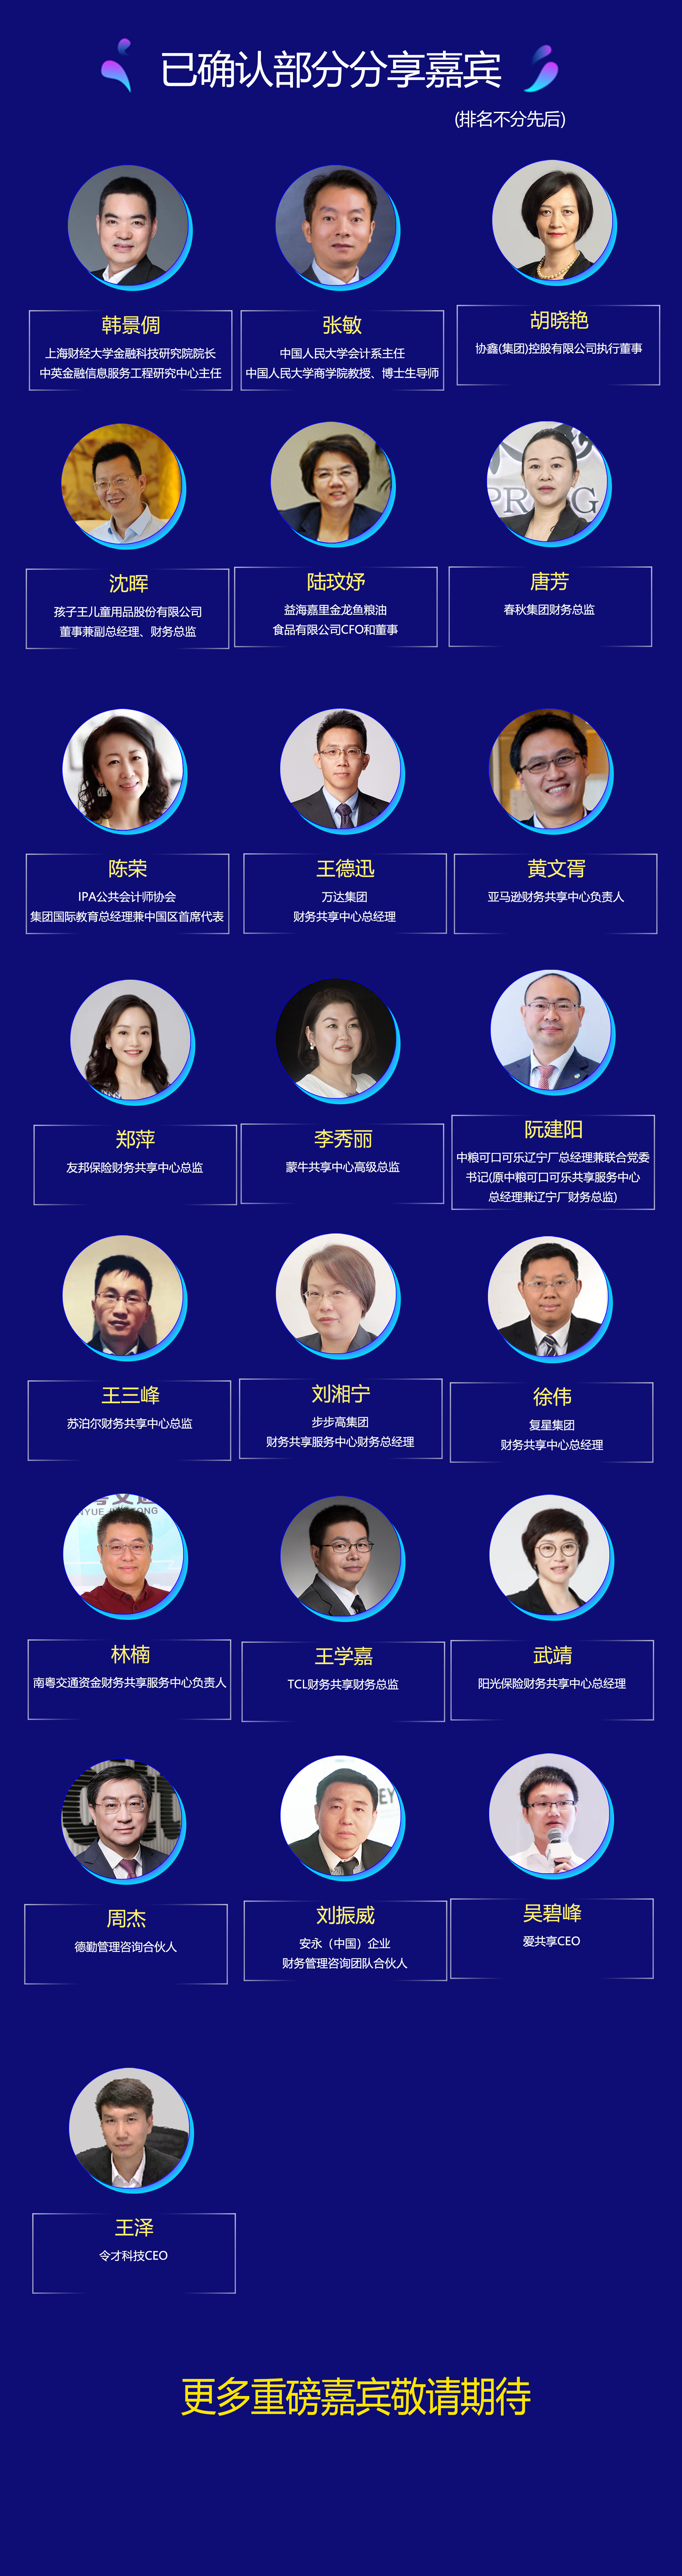 2019中国财务共享服务中心高峰会暨亚太智能财务共享最佳实践颁奖盛典（上海）